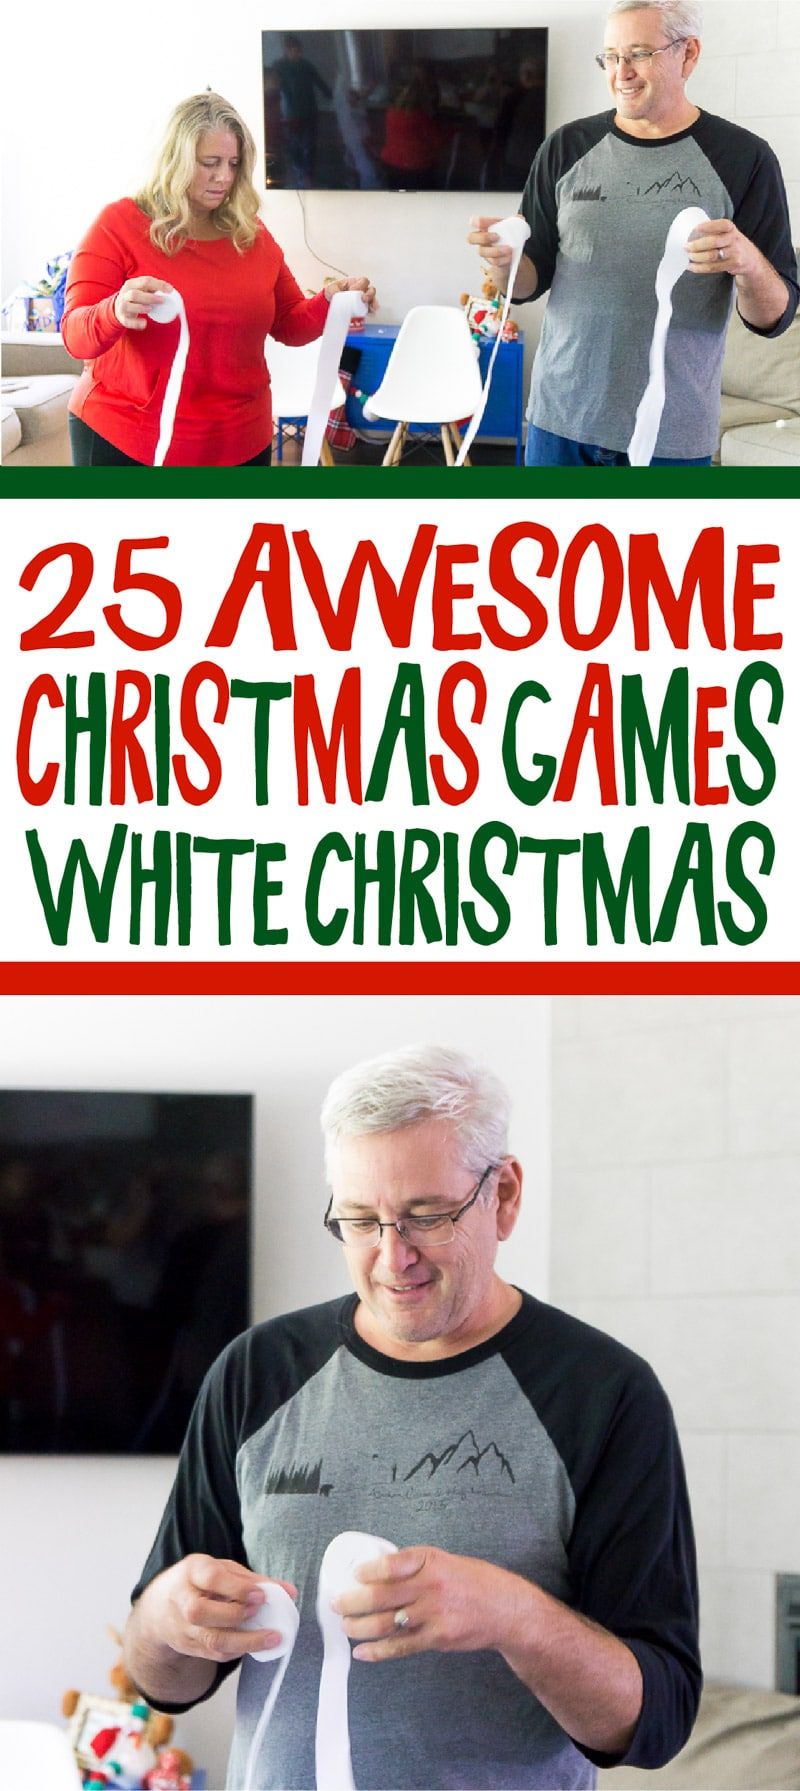 Permainan Krismas yang menggembirakan untuk orang dewasa, kanak-kanak dan remaja